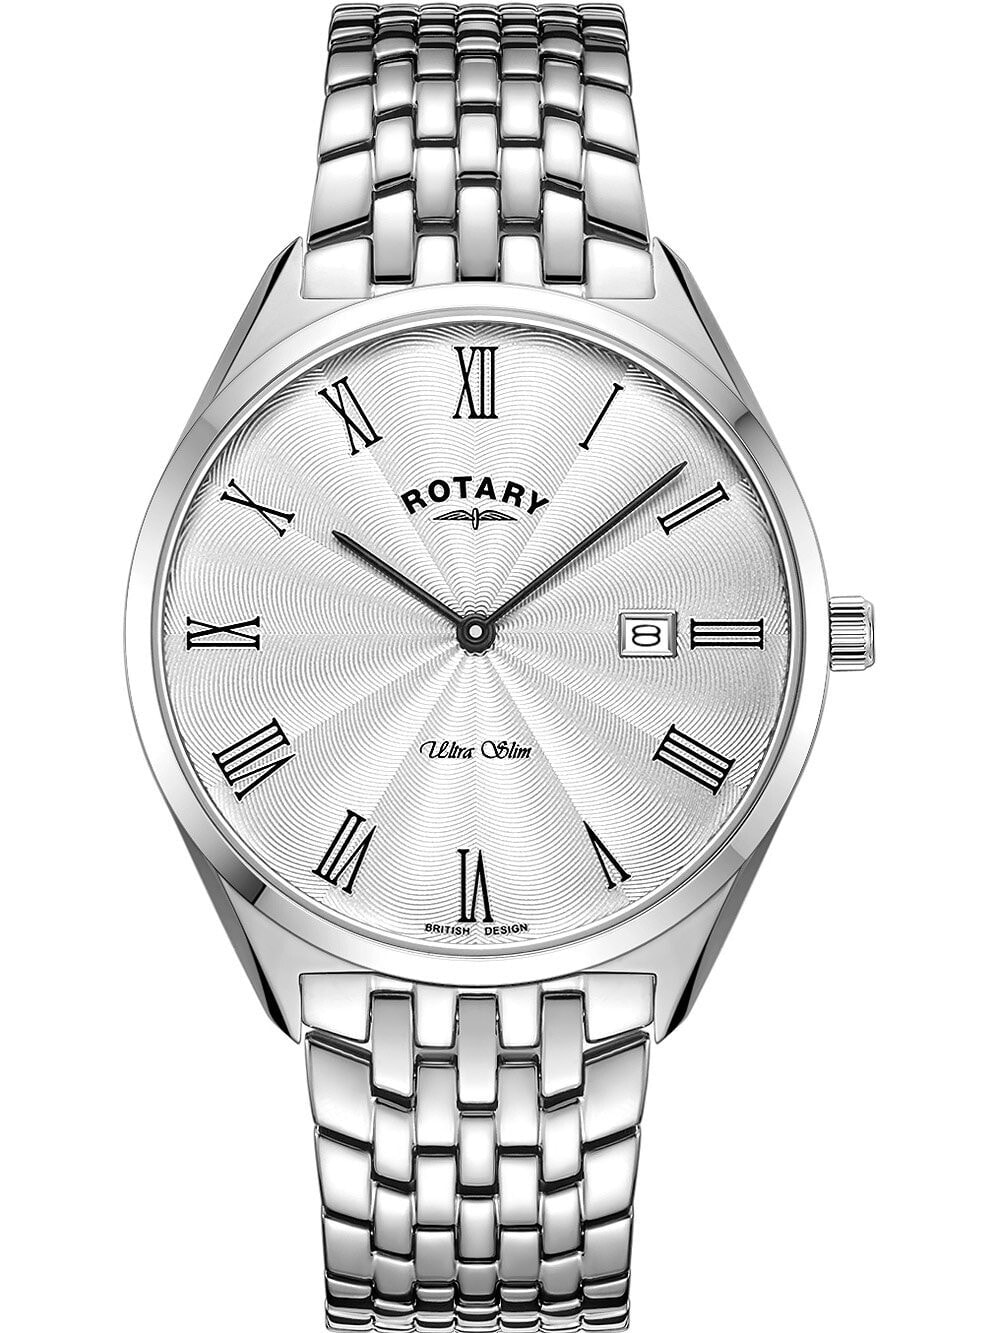 Мужские наручные часы с серебряным браслетом Rotary GB08010/01 Ultra Slim mens 38mm 5ATM